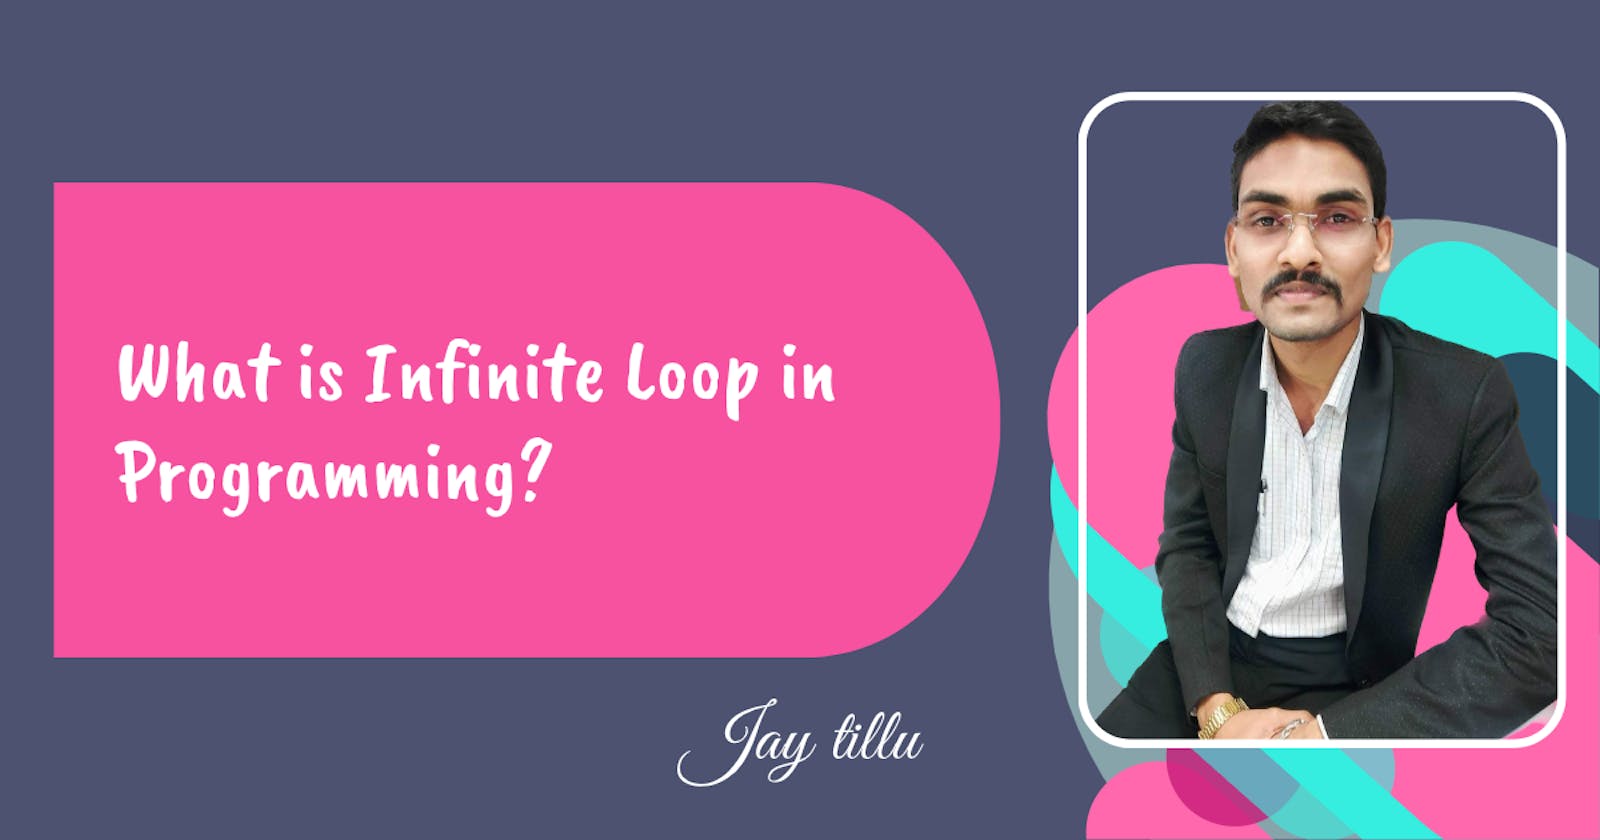 What is Infinite Loop in Programming?